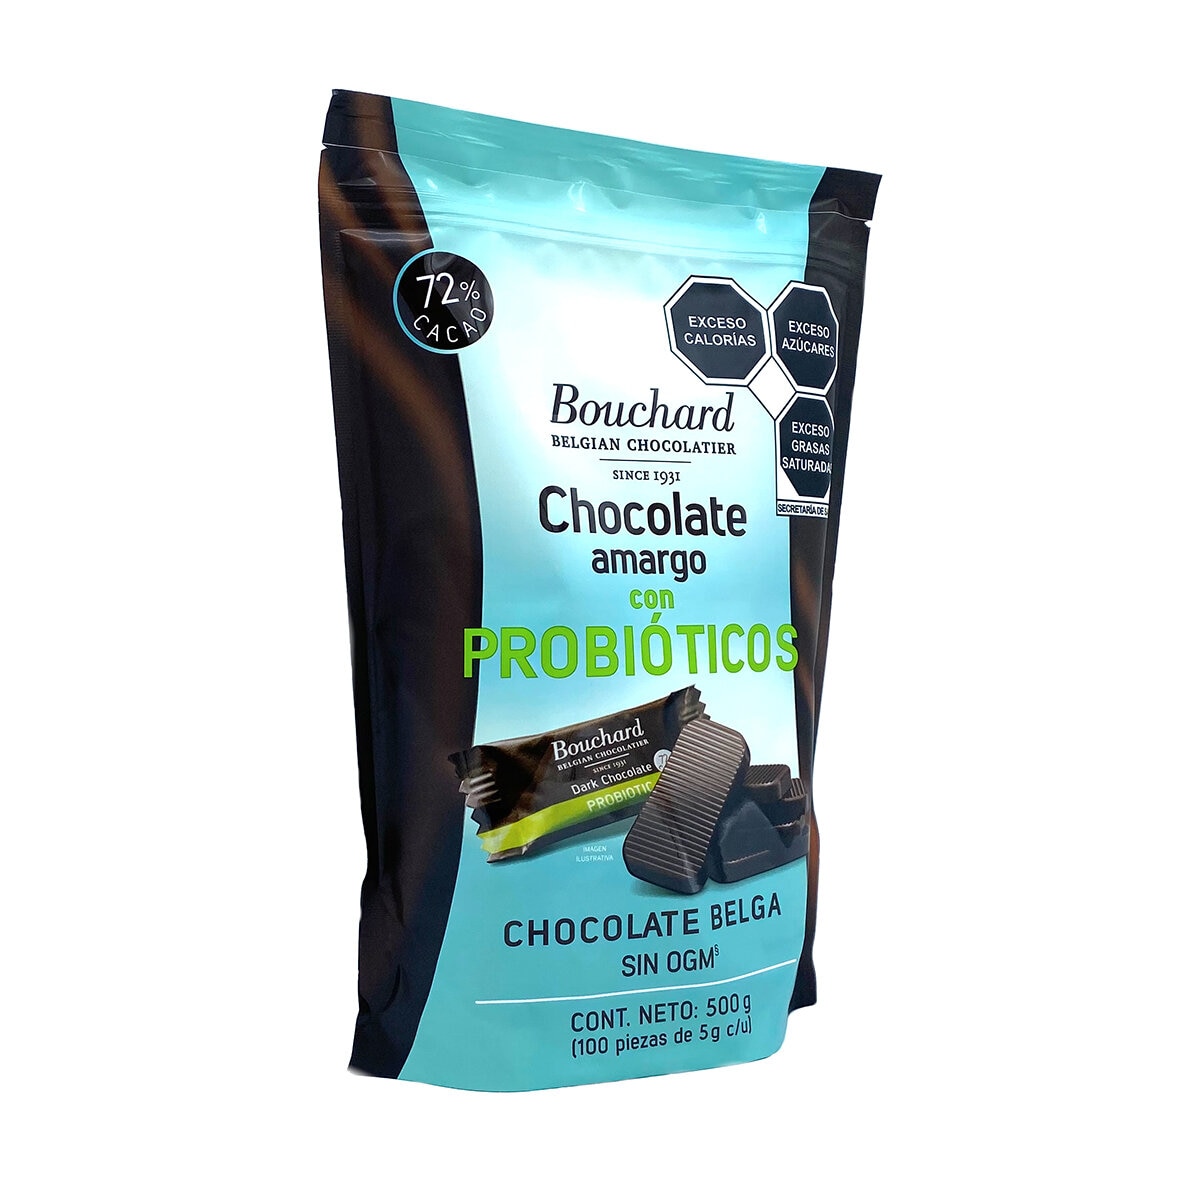 Bouchard Chocolate Belga Amargo 100 pzas de 5 g